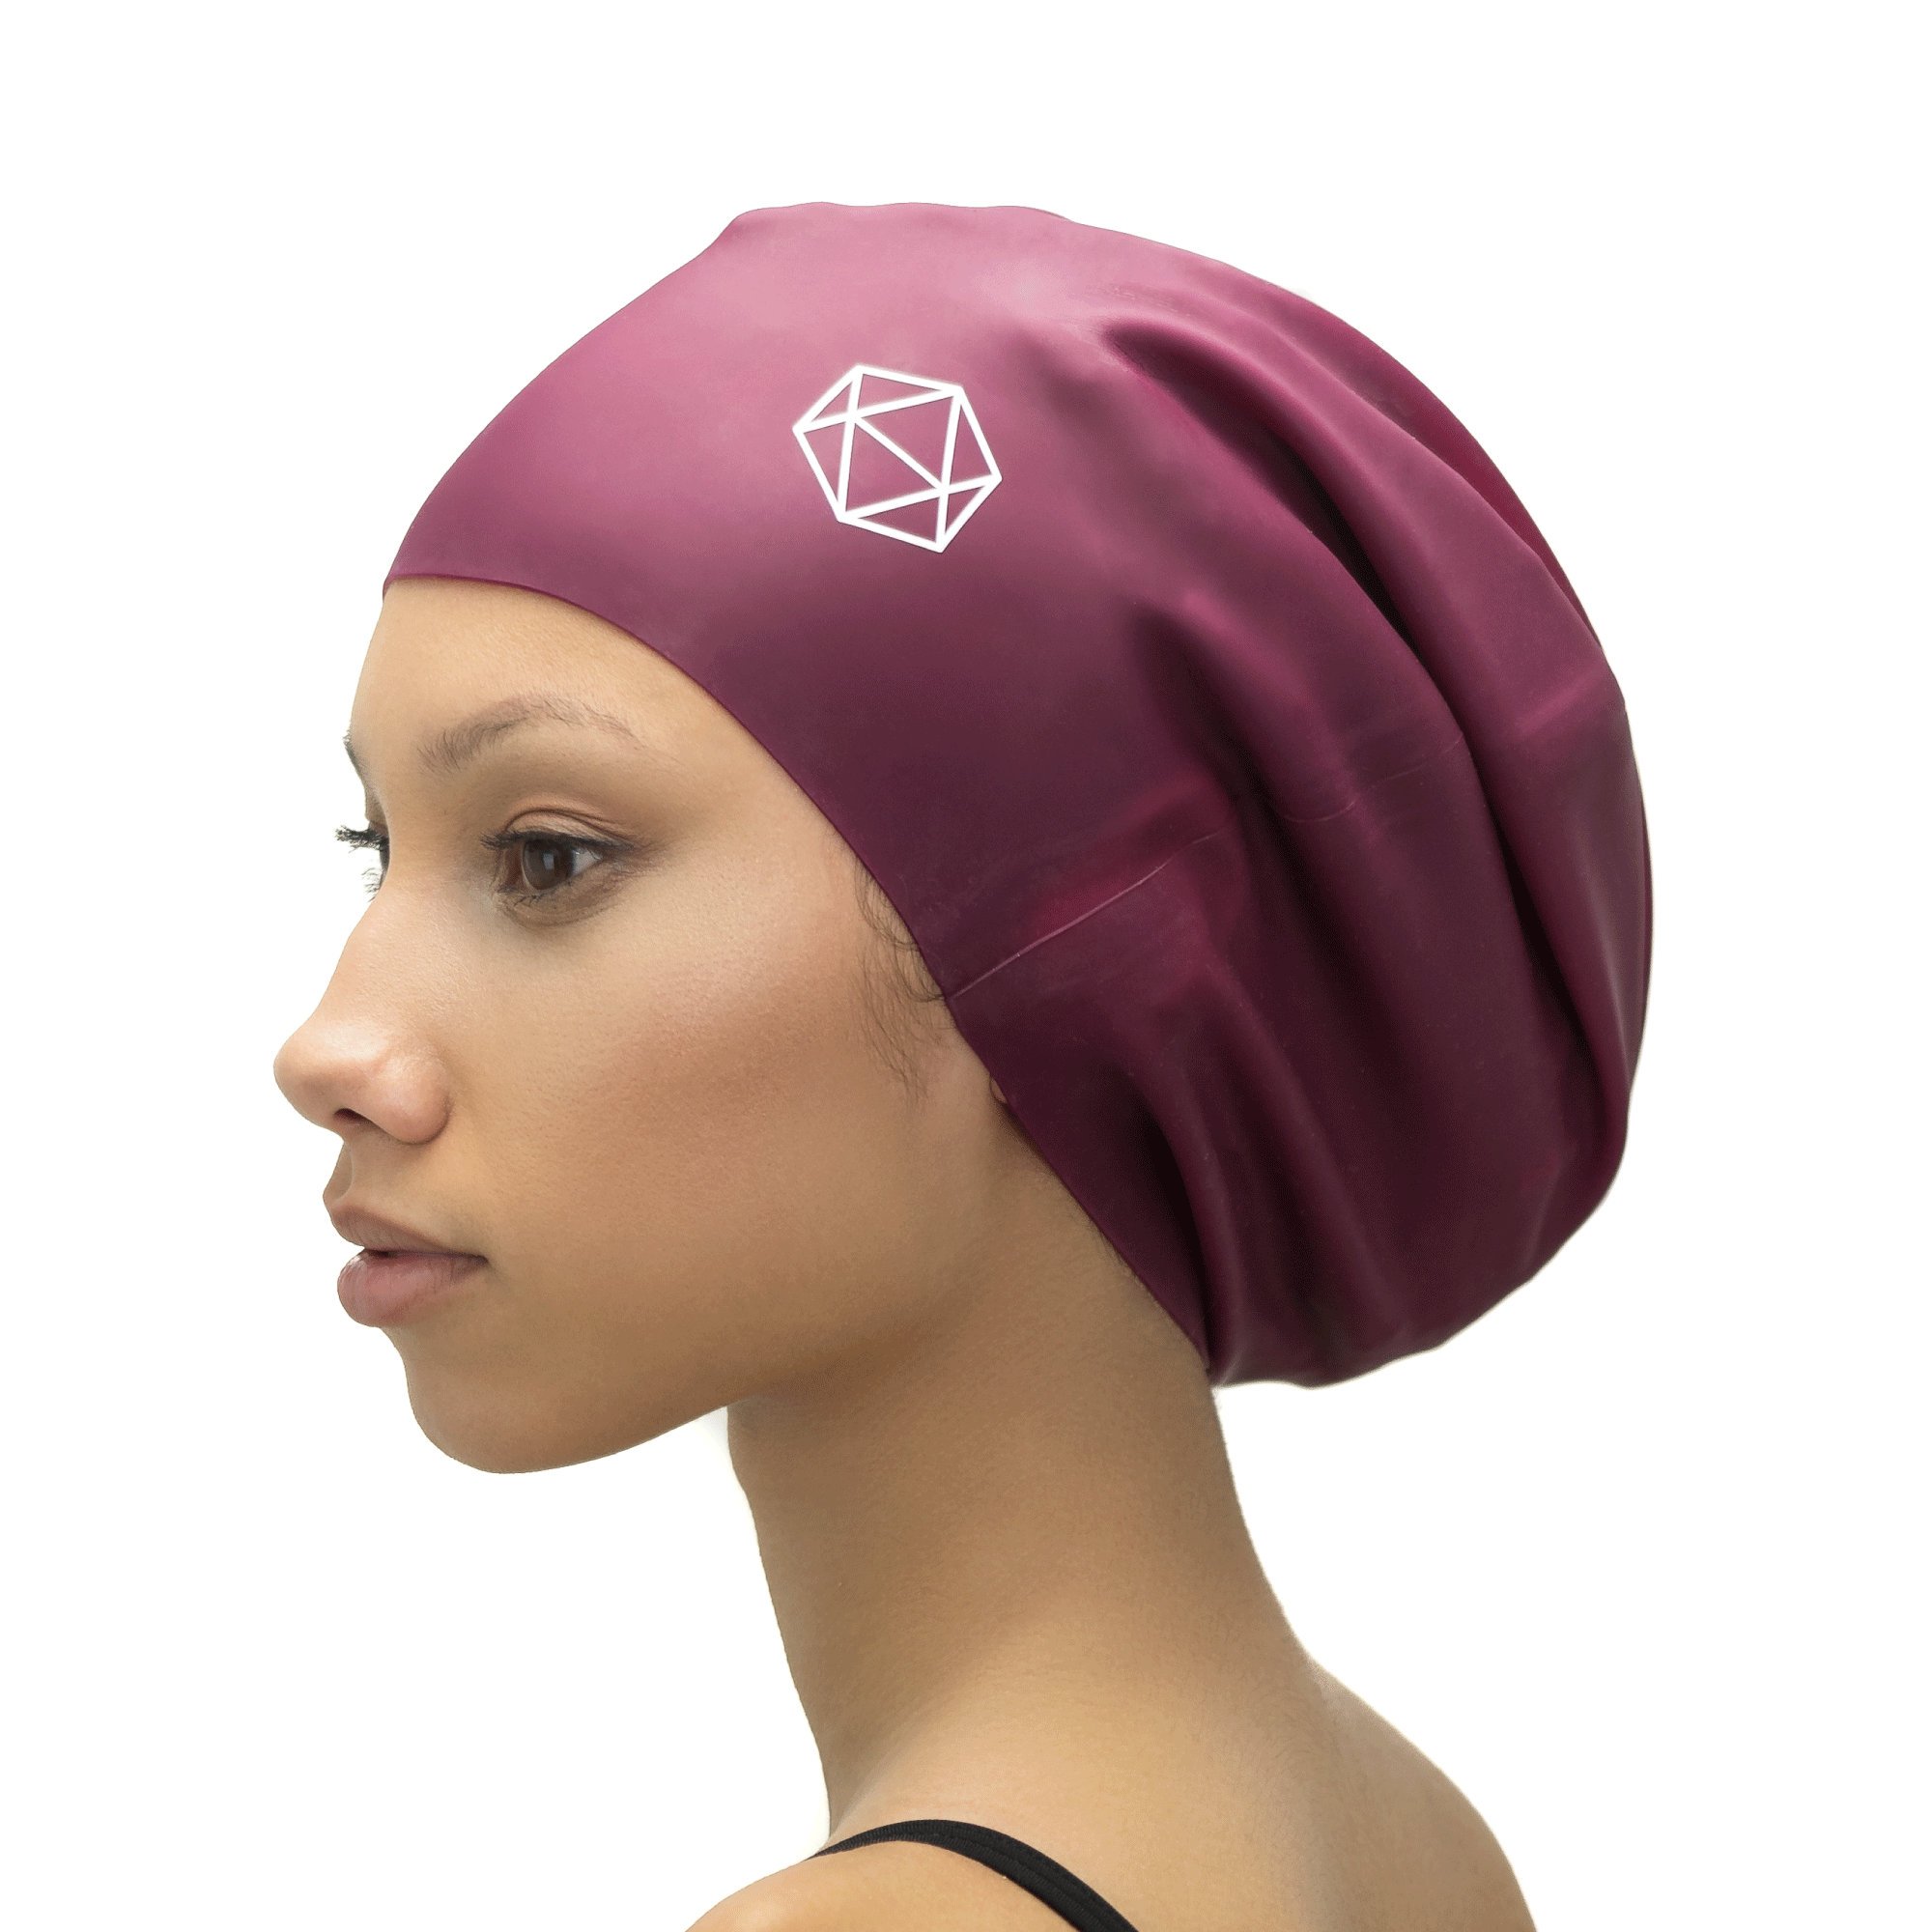 XL Swim Cap for Locs - Acheter bonnet de bain bonnet de bain pour dreadlocks Dreads Afros Rastazoepfe Extensions Braids en ligne